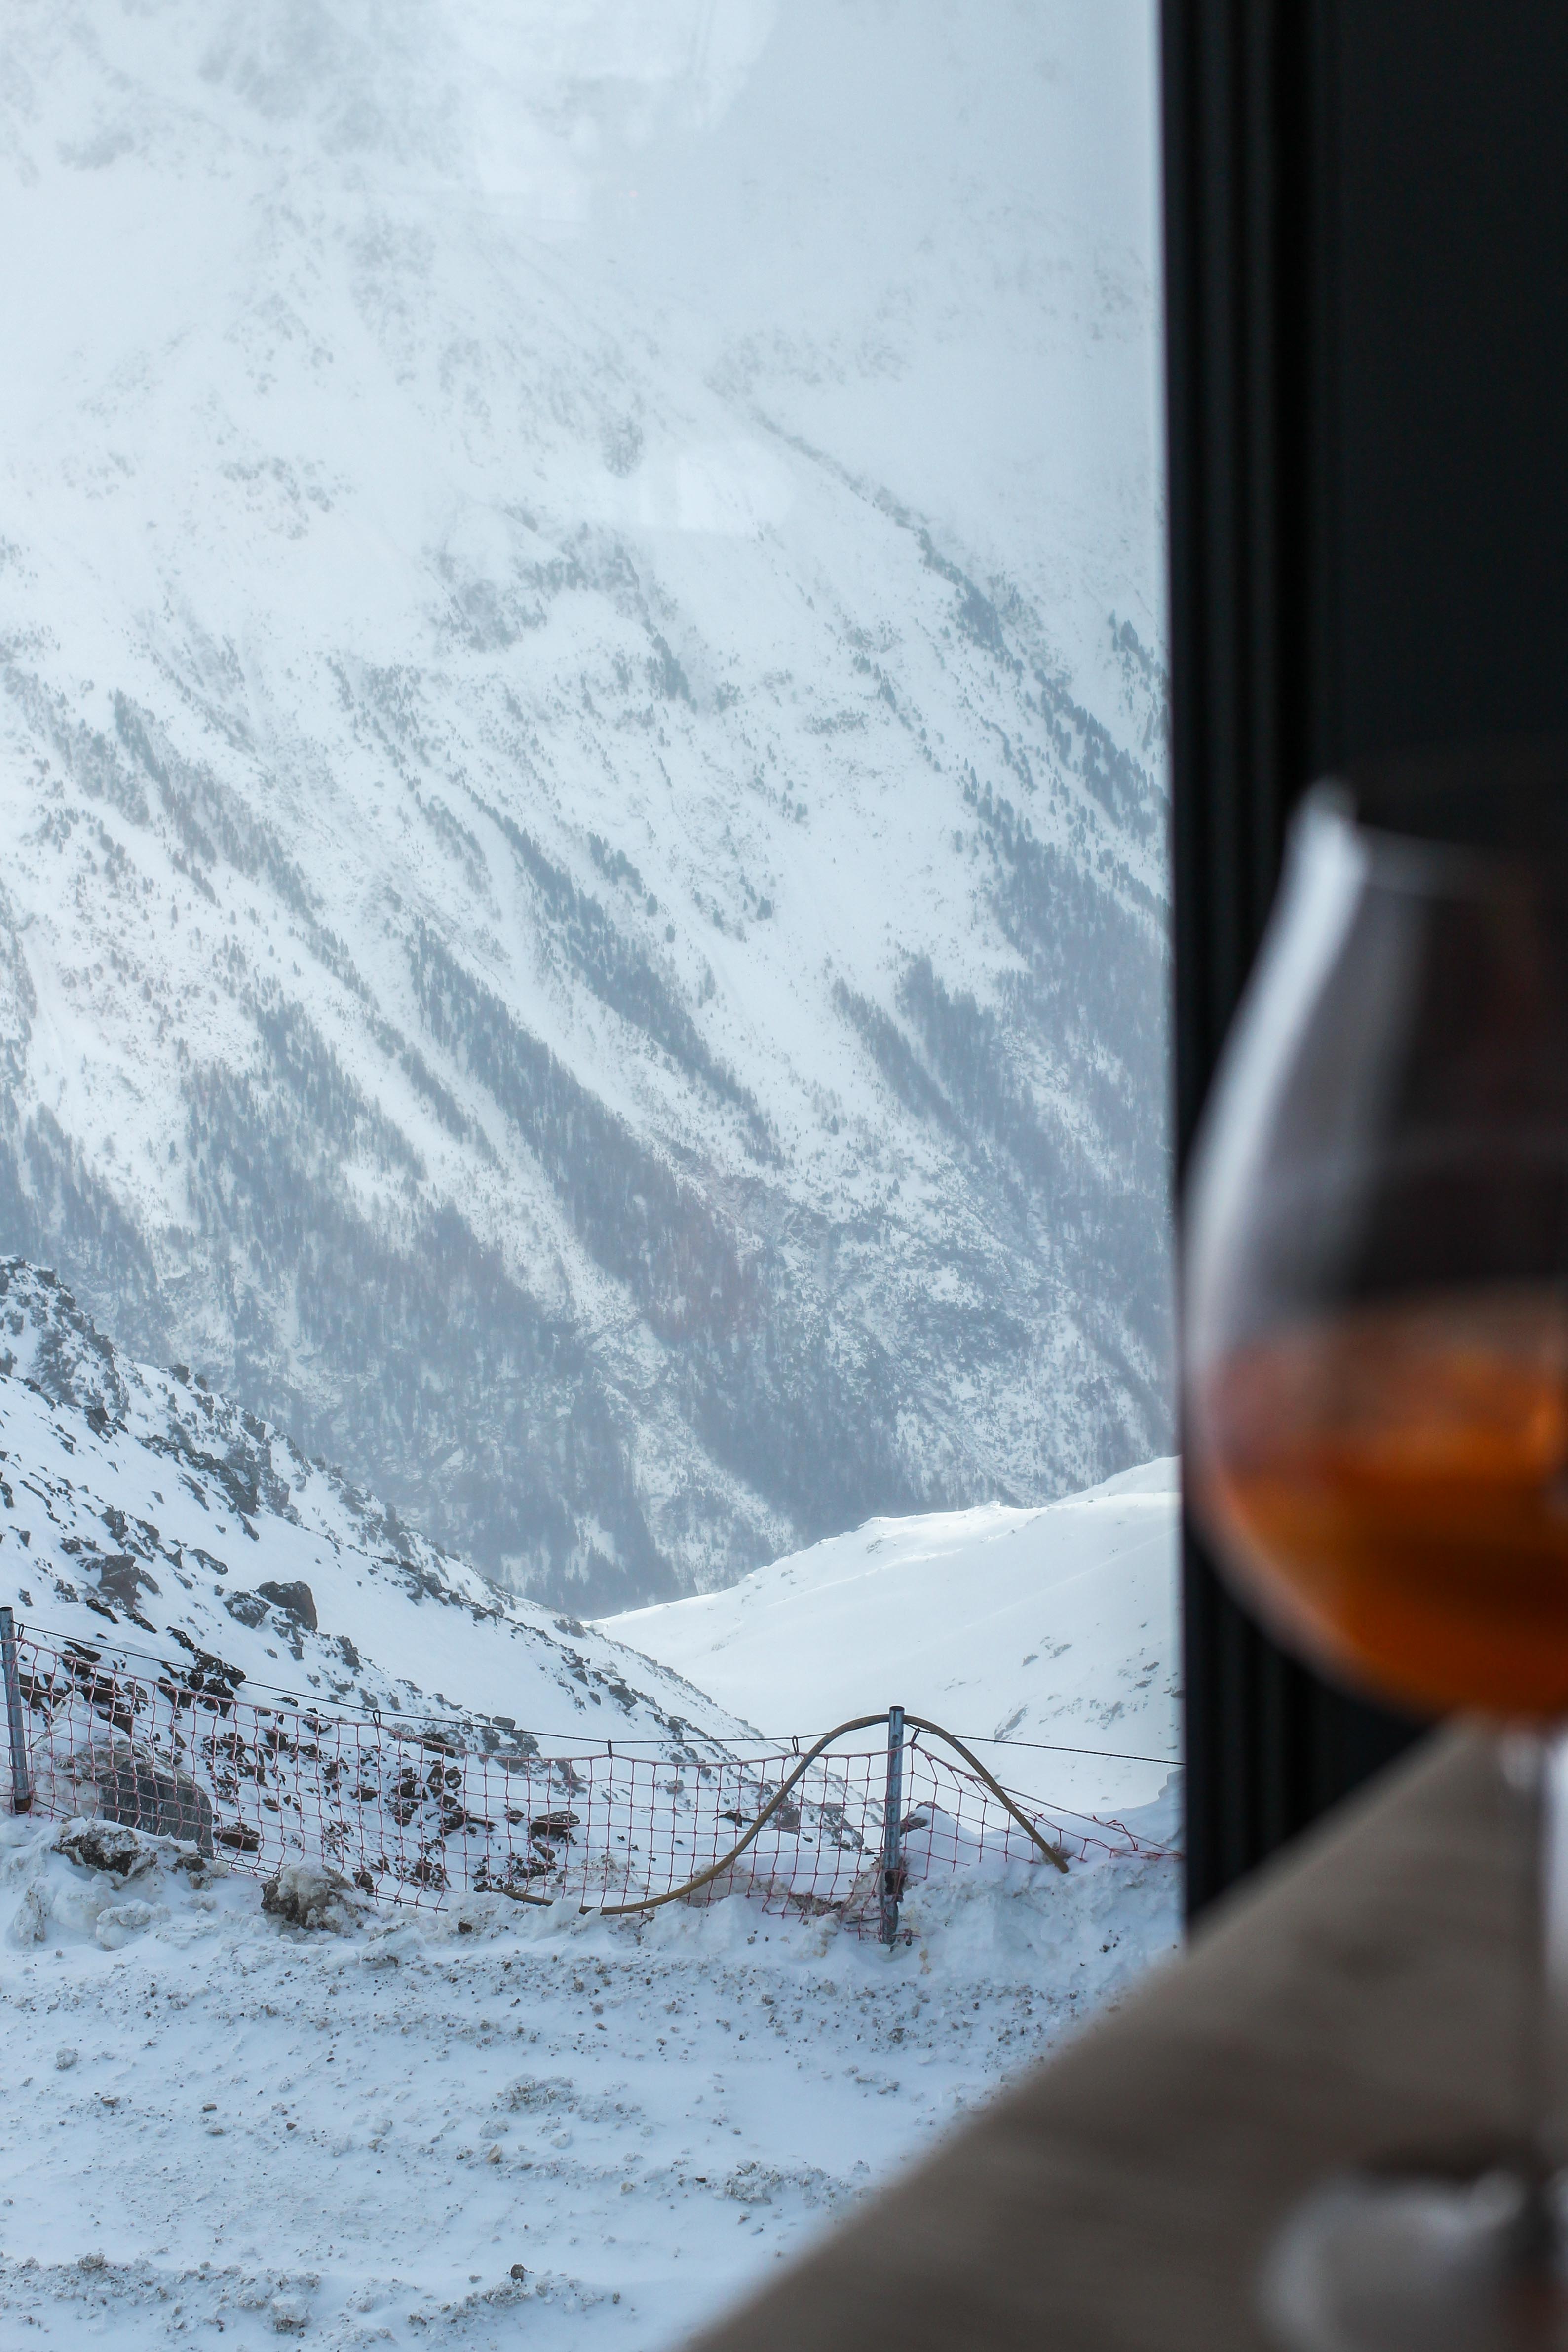 Gourmet-Restaurant Gipfelaussicht Berge Schnee iceQ Sölden Tirol Österreich James Bond Location Spectre 3000m Gaislachkogl Reiseblog